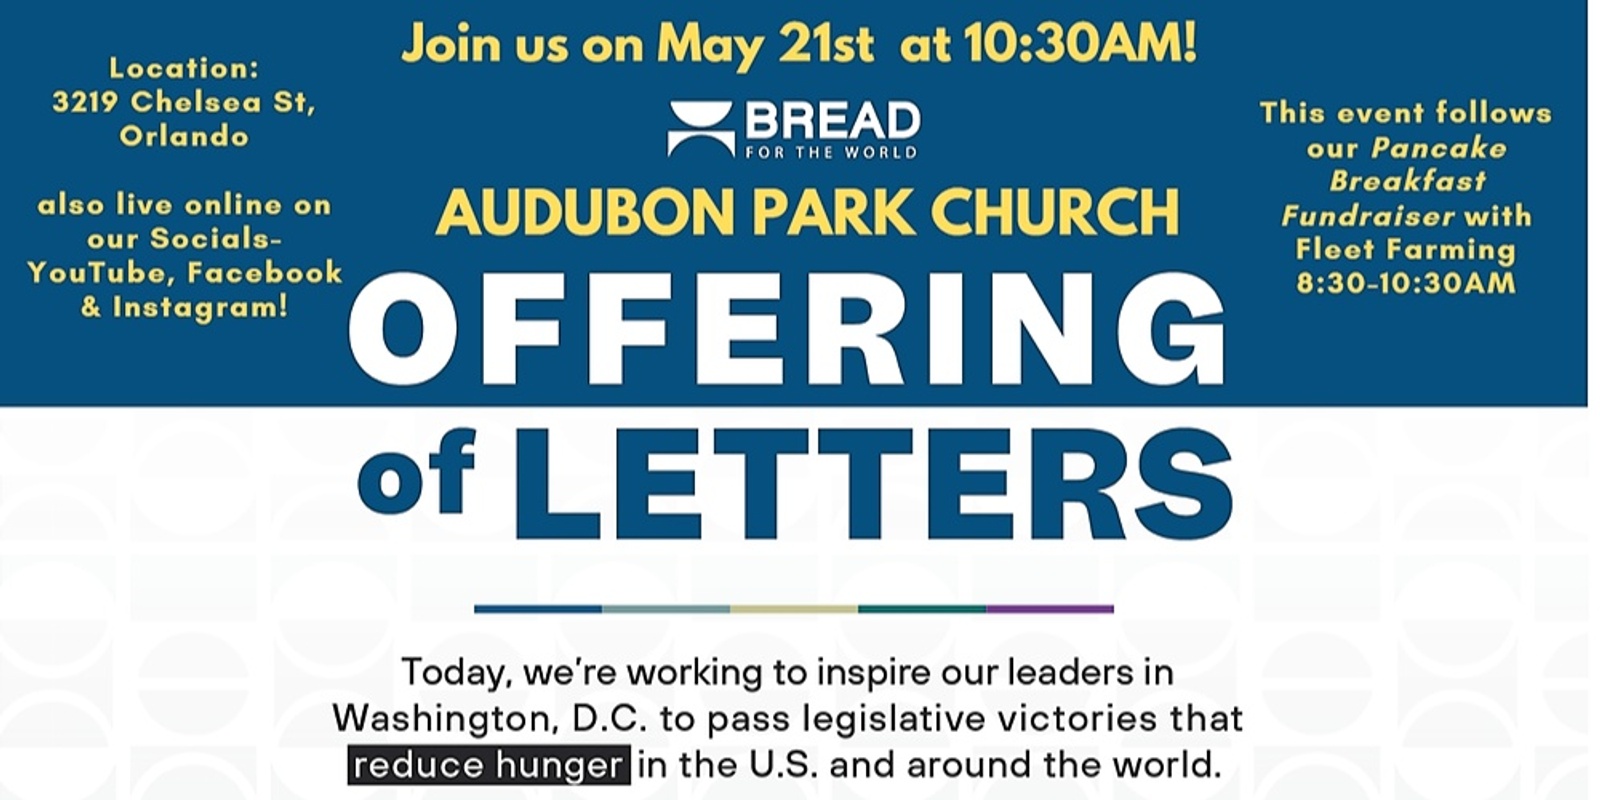 Audubon Park Church Offering of Letters